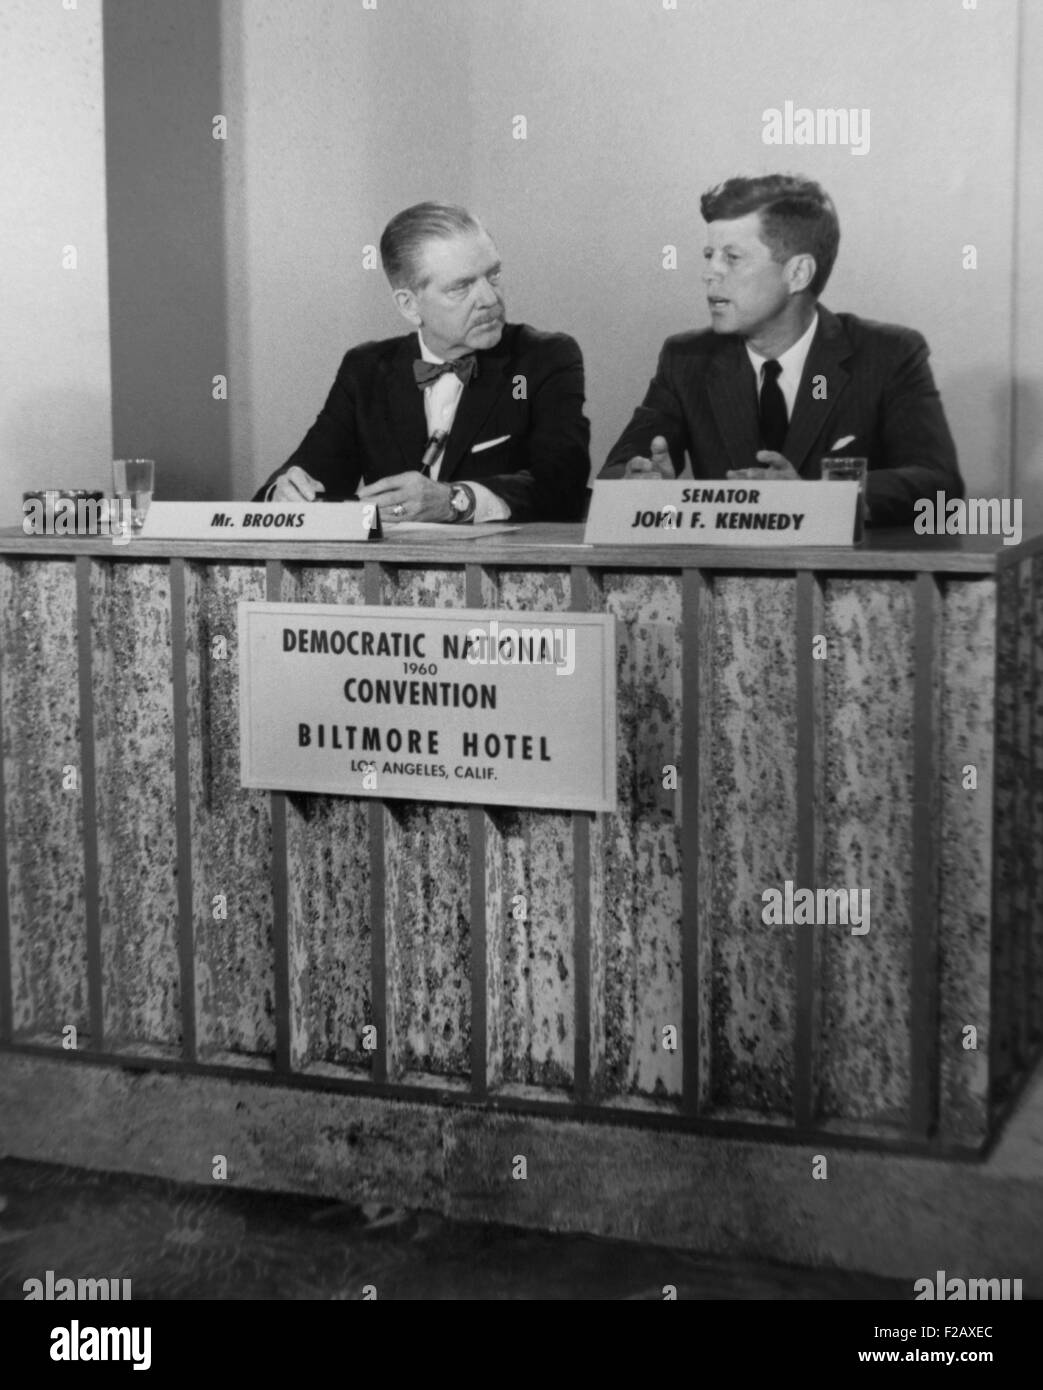 El senador John F. Kennedy el show televisivo ENCUENTRO CON LA PRENSA. Fue entrevistado por Ned Brooks durante la Convención Nacional Demócrata en Los Angeles, Julio 11-17, 1960. (BSLOC 2015 2 220). Foto de stock